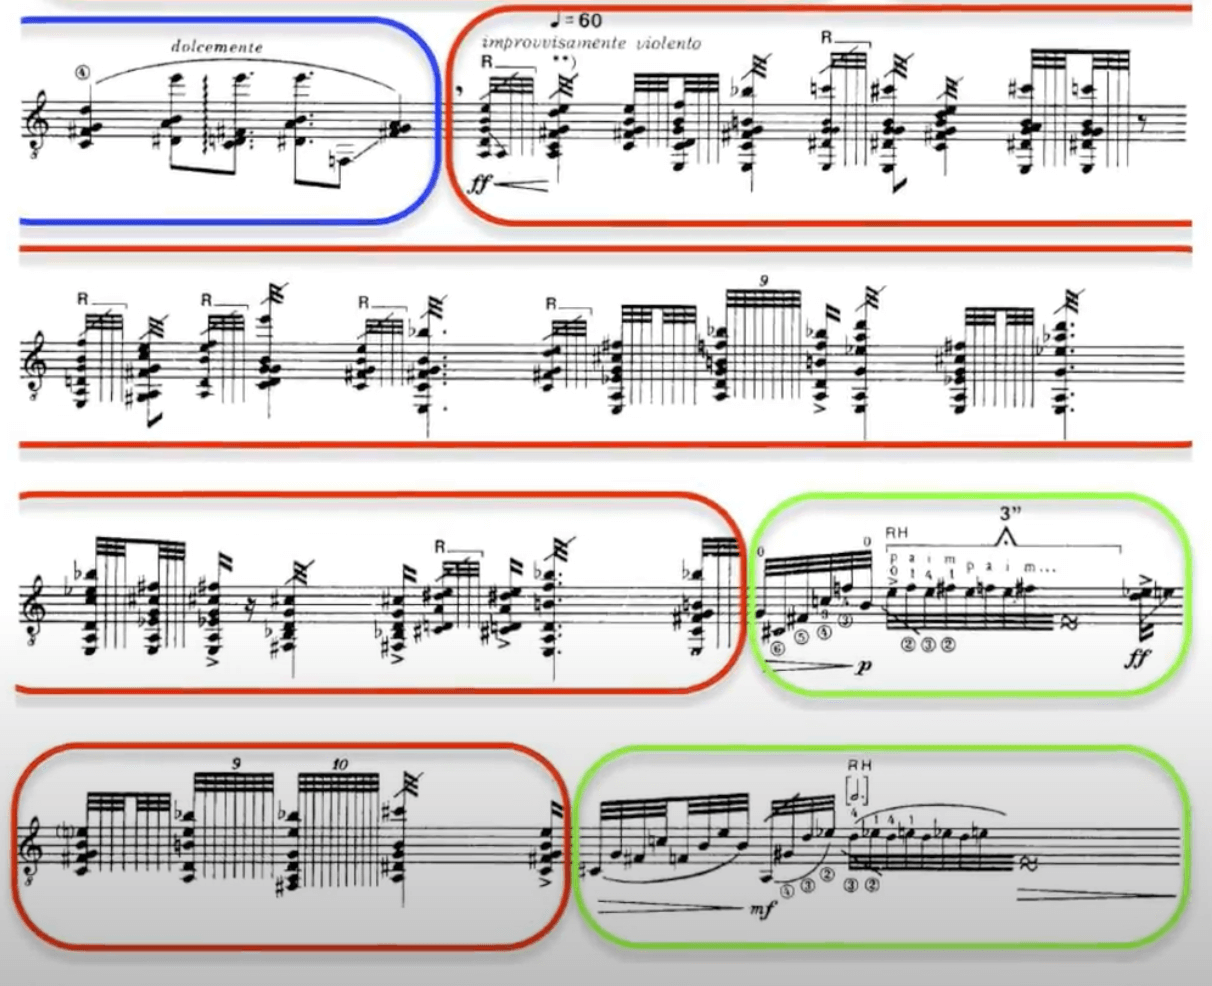 Partitura musical con secciones resaltadas en diversos colores